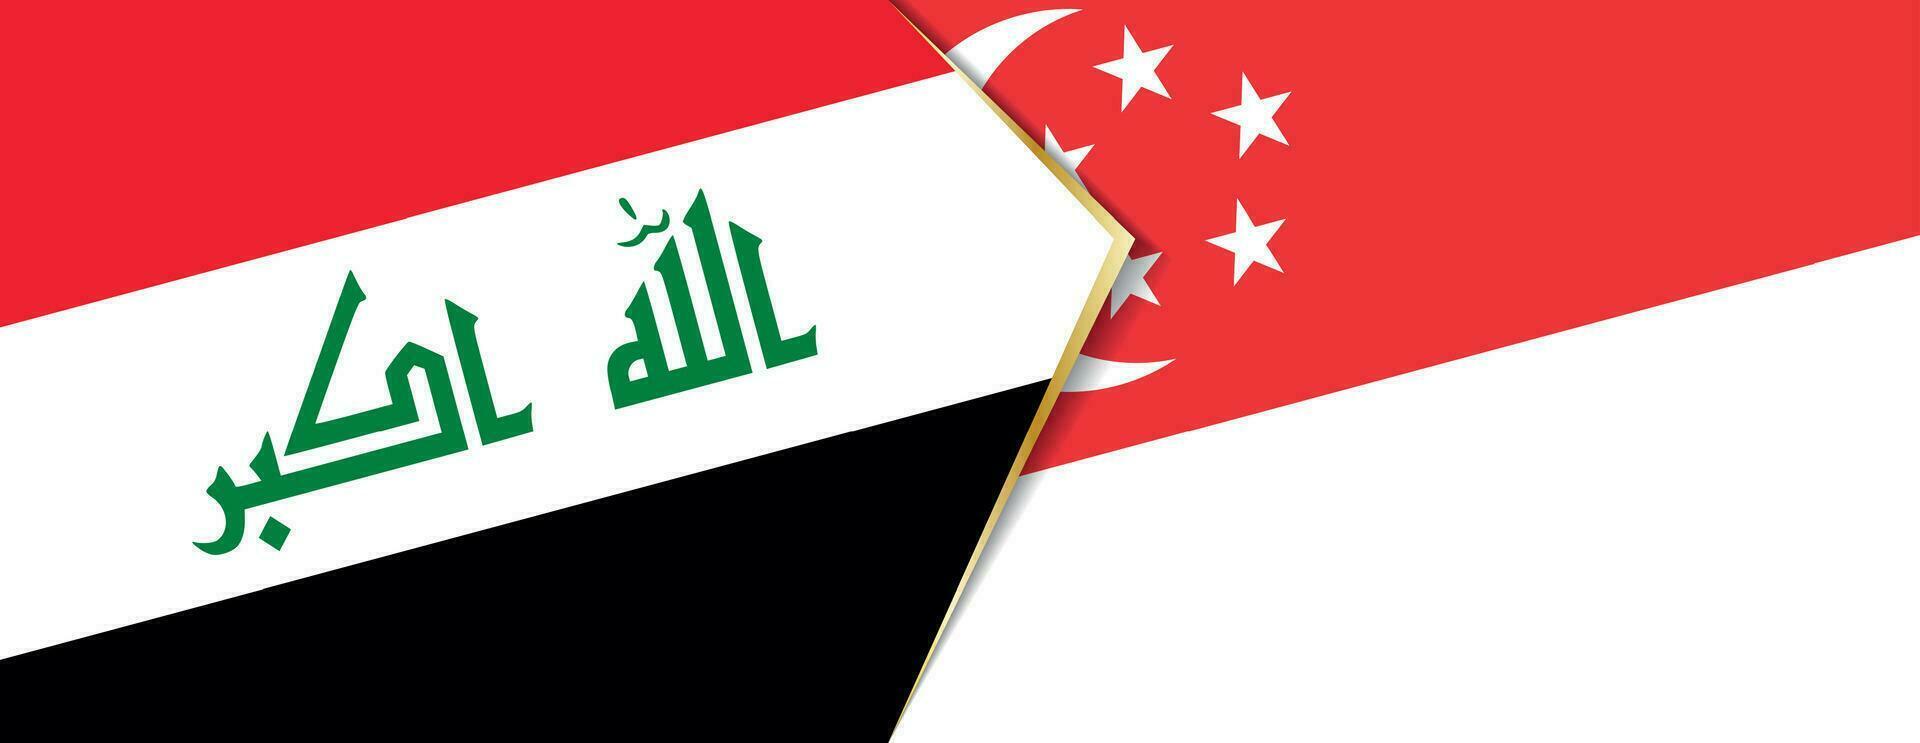 Irak y Singapur banderas, dos vector banderas